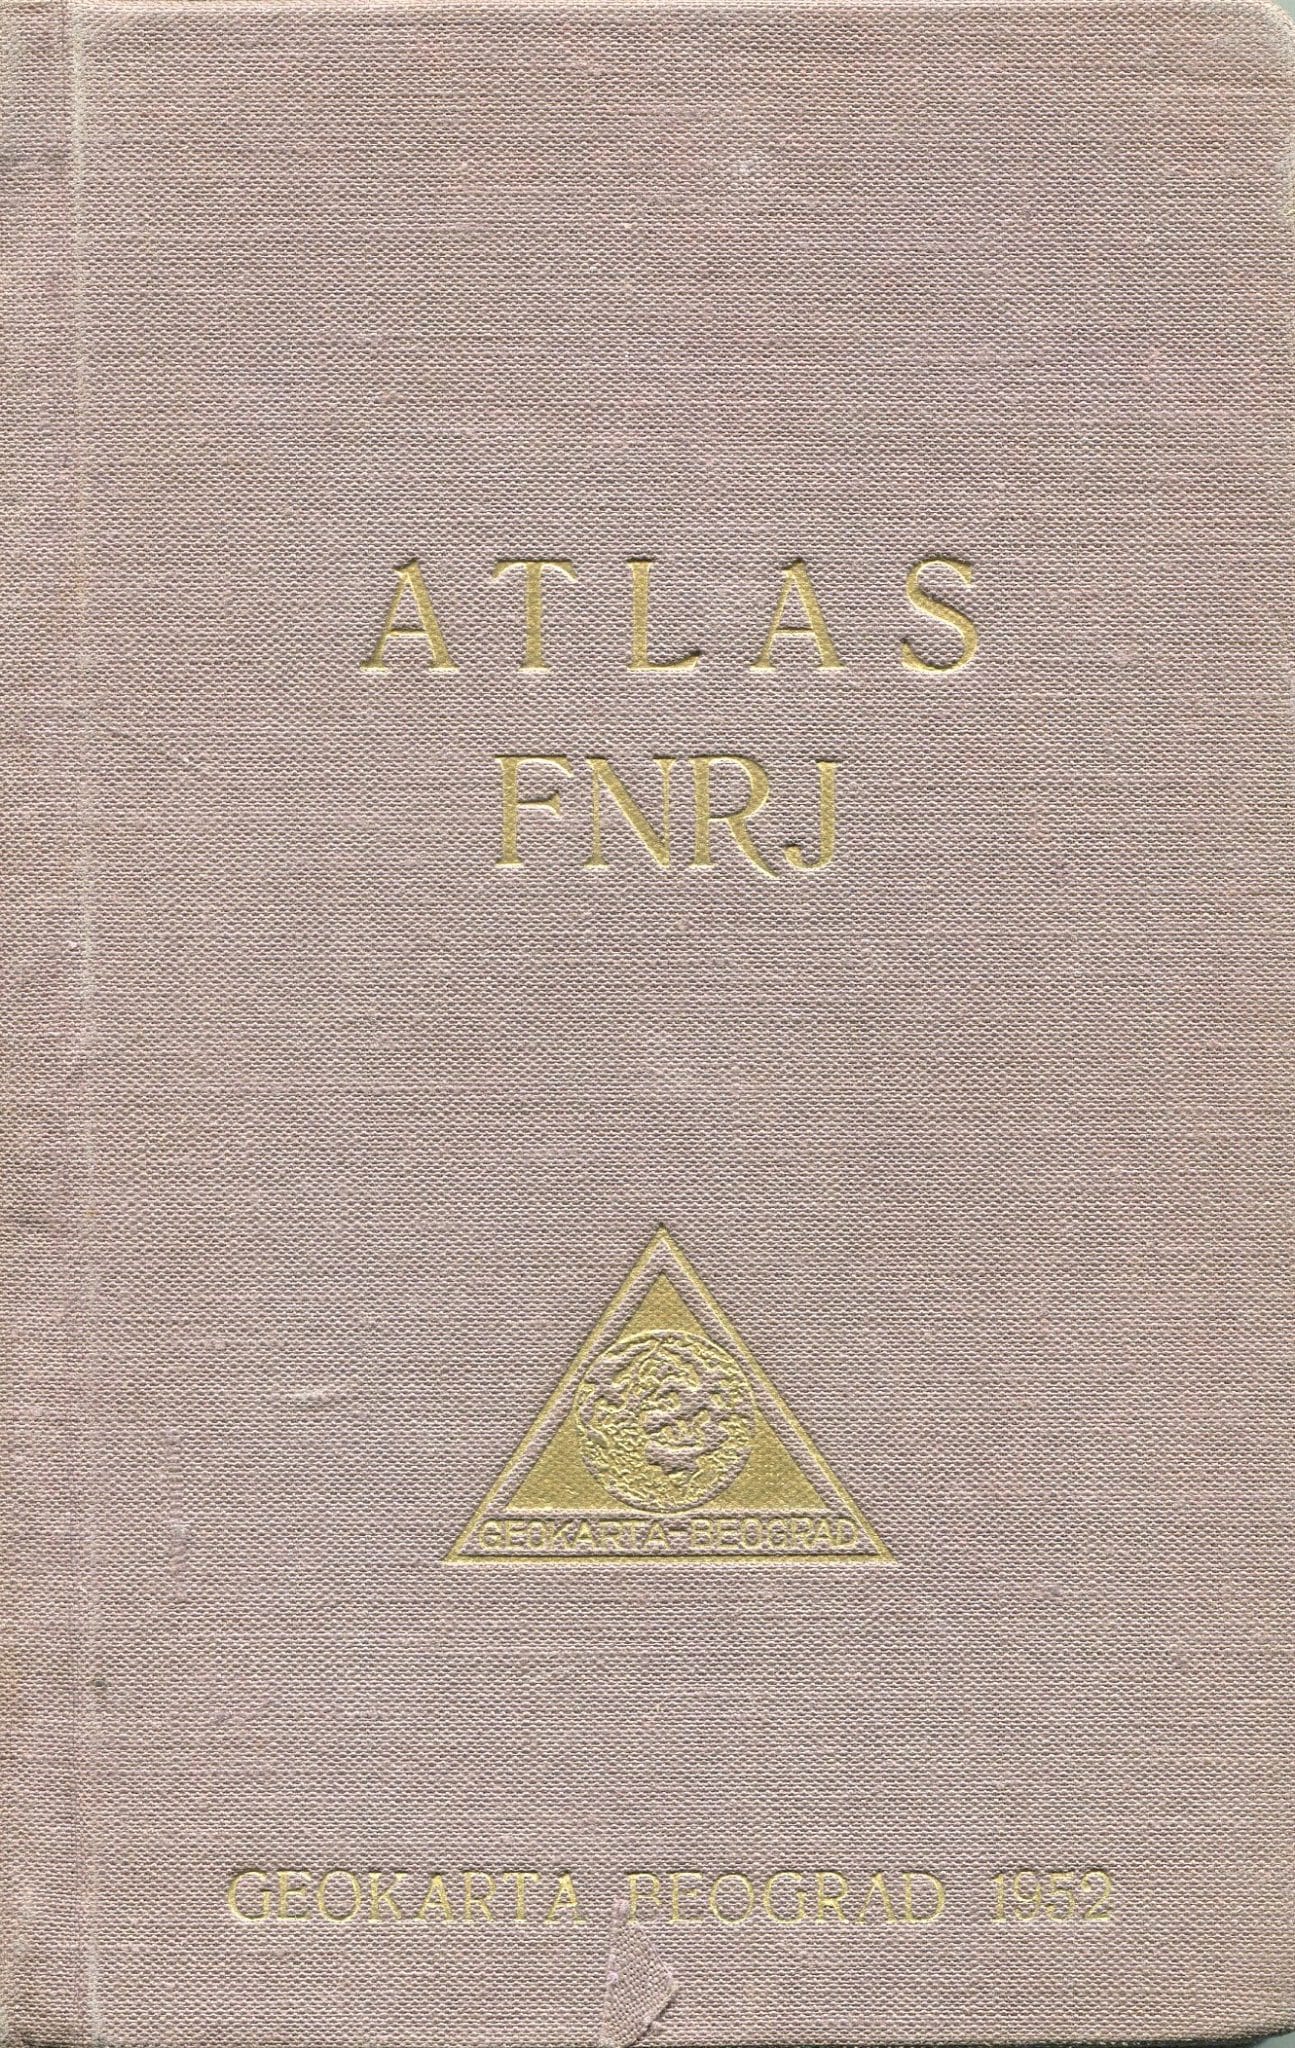 Atlas FNRJ Josip H. Uhlik